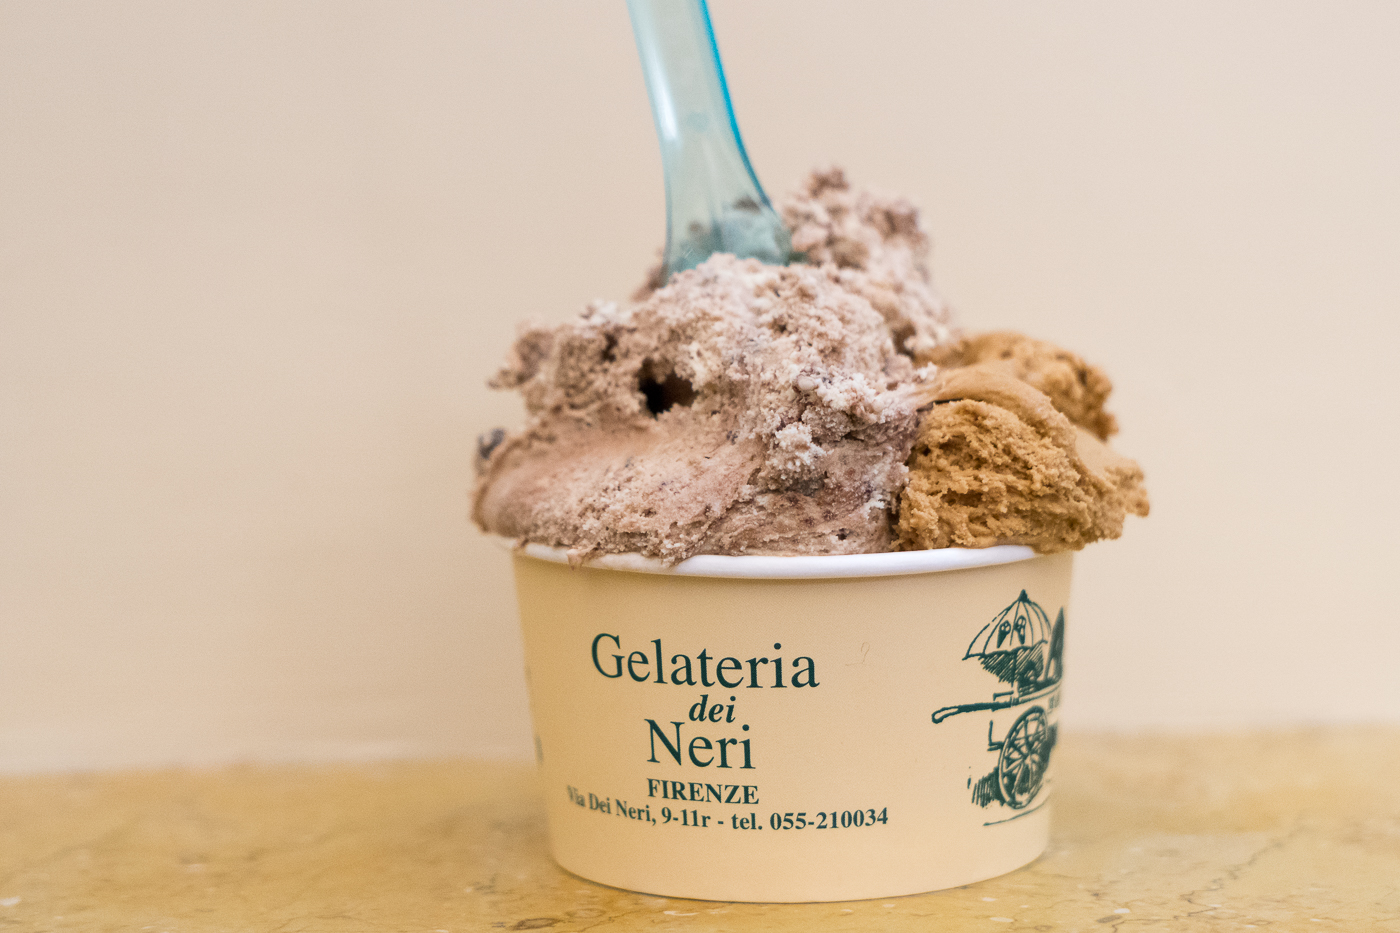 Coupe de gelato - Gelateria dei Neri de Florence